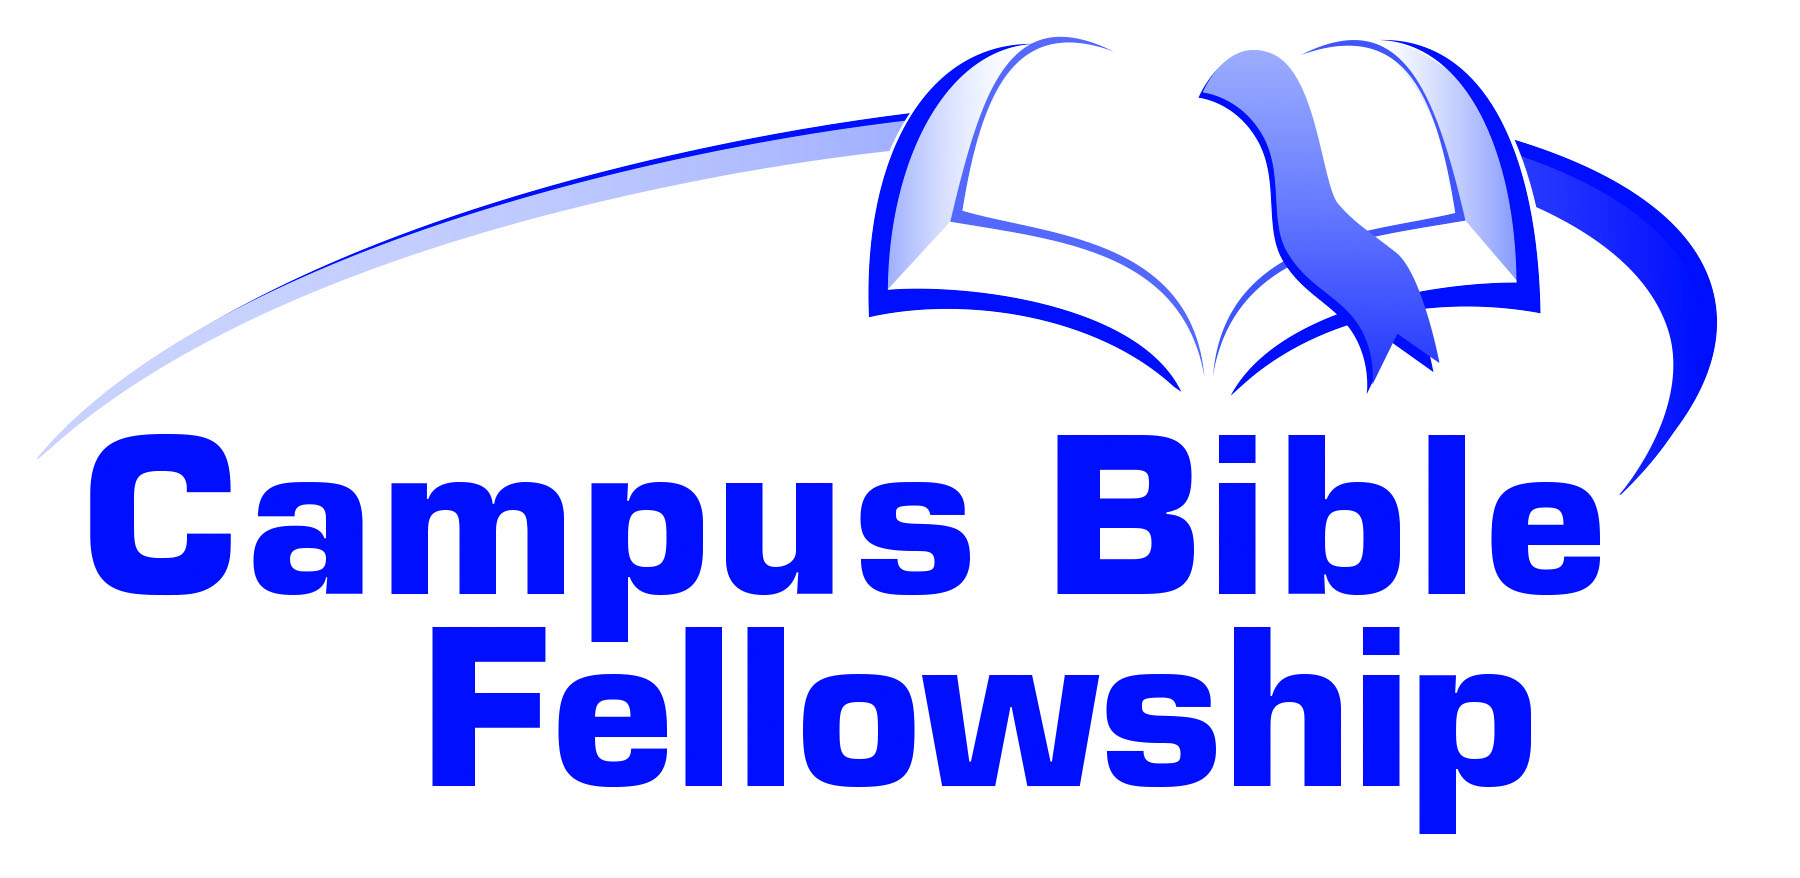 Campus Bible Fellowship to meet Nov. 29